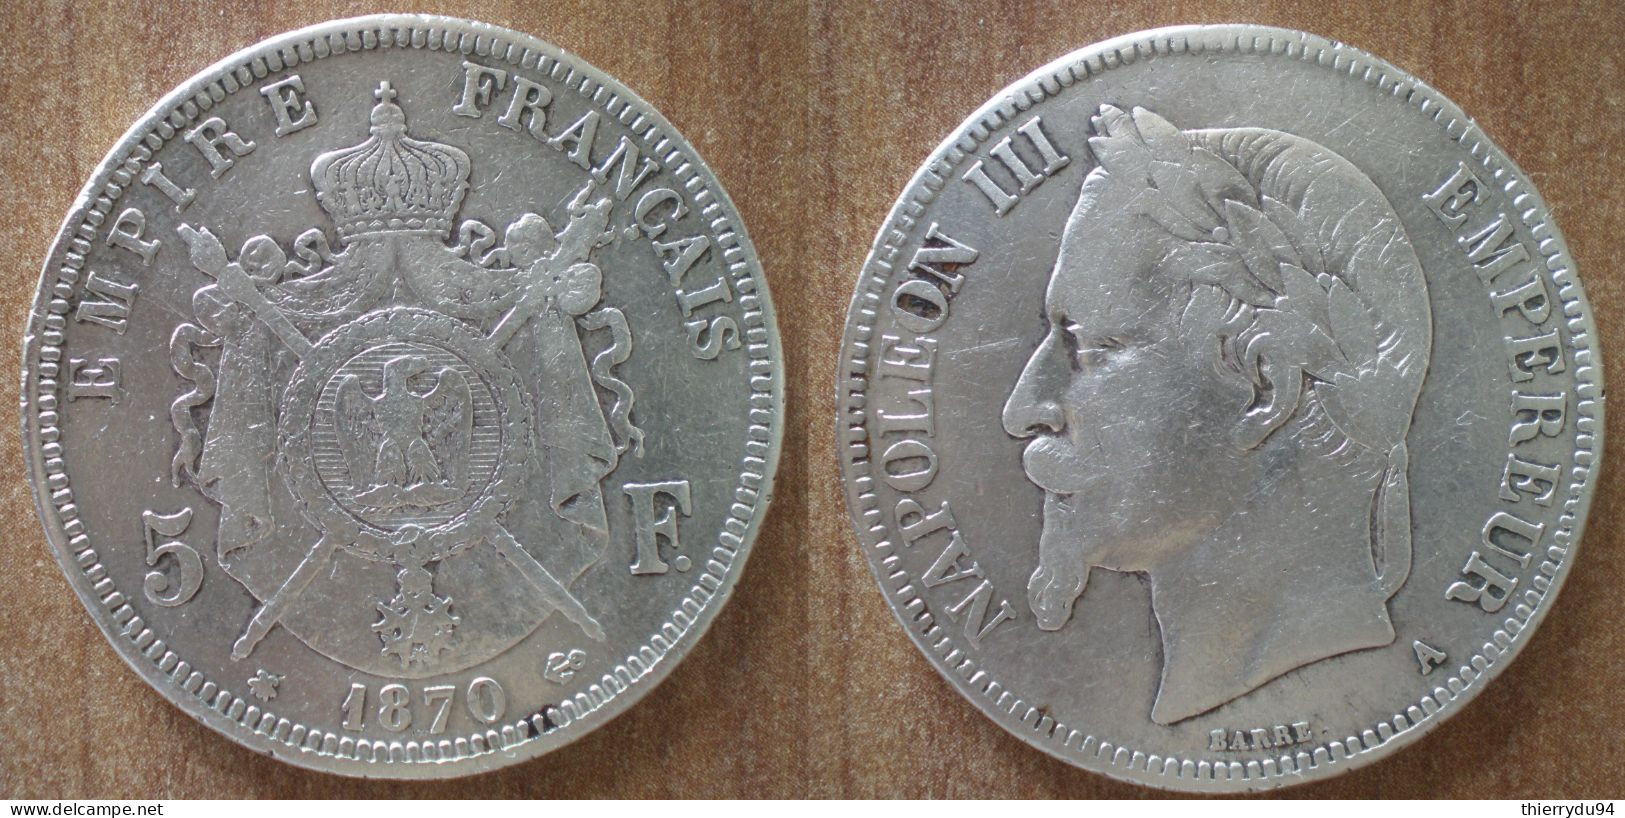 France 5 Francs 1870 Mint A Päris Napoleon 3 Que Prix + Port Frcs Frc Cents Centimes Argent Silver Paypal Bitcoin OK - 5 Francs